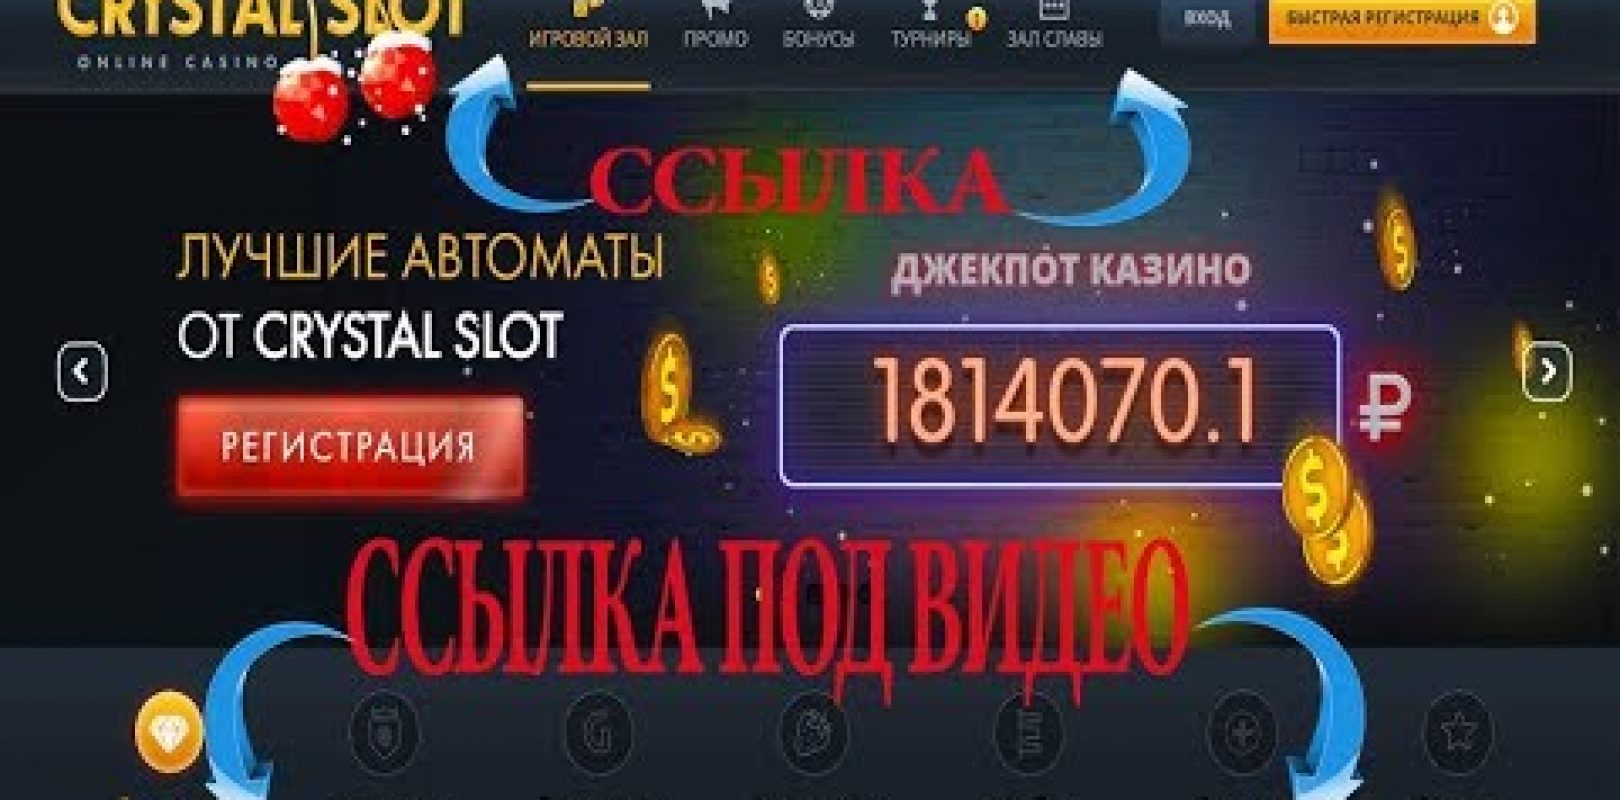 Casino pasino.ch